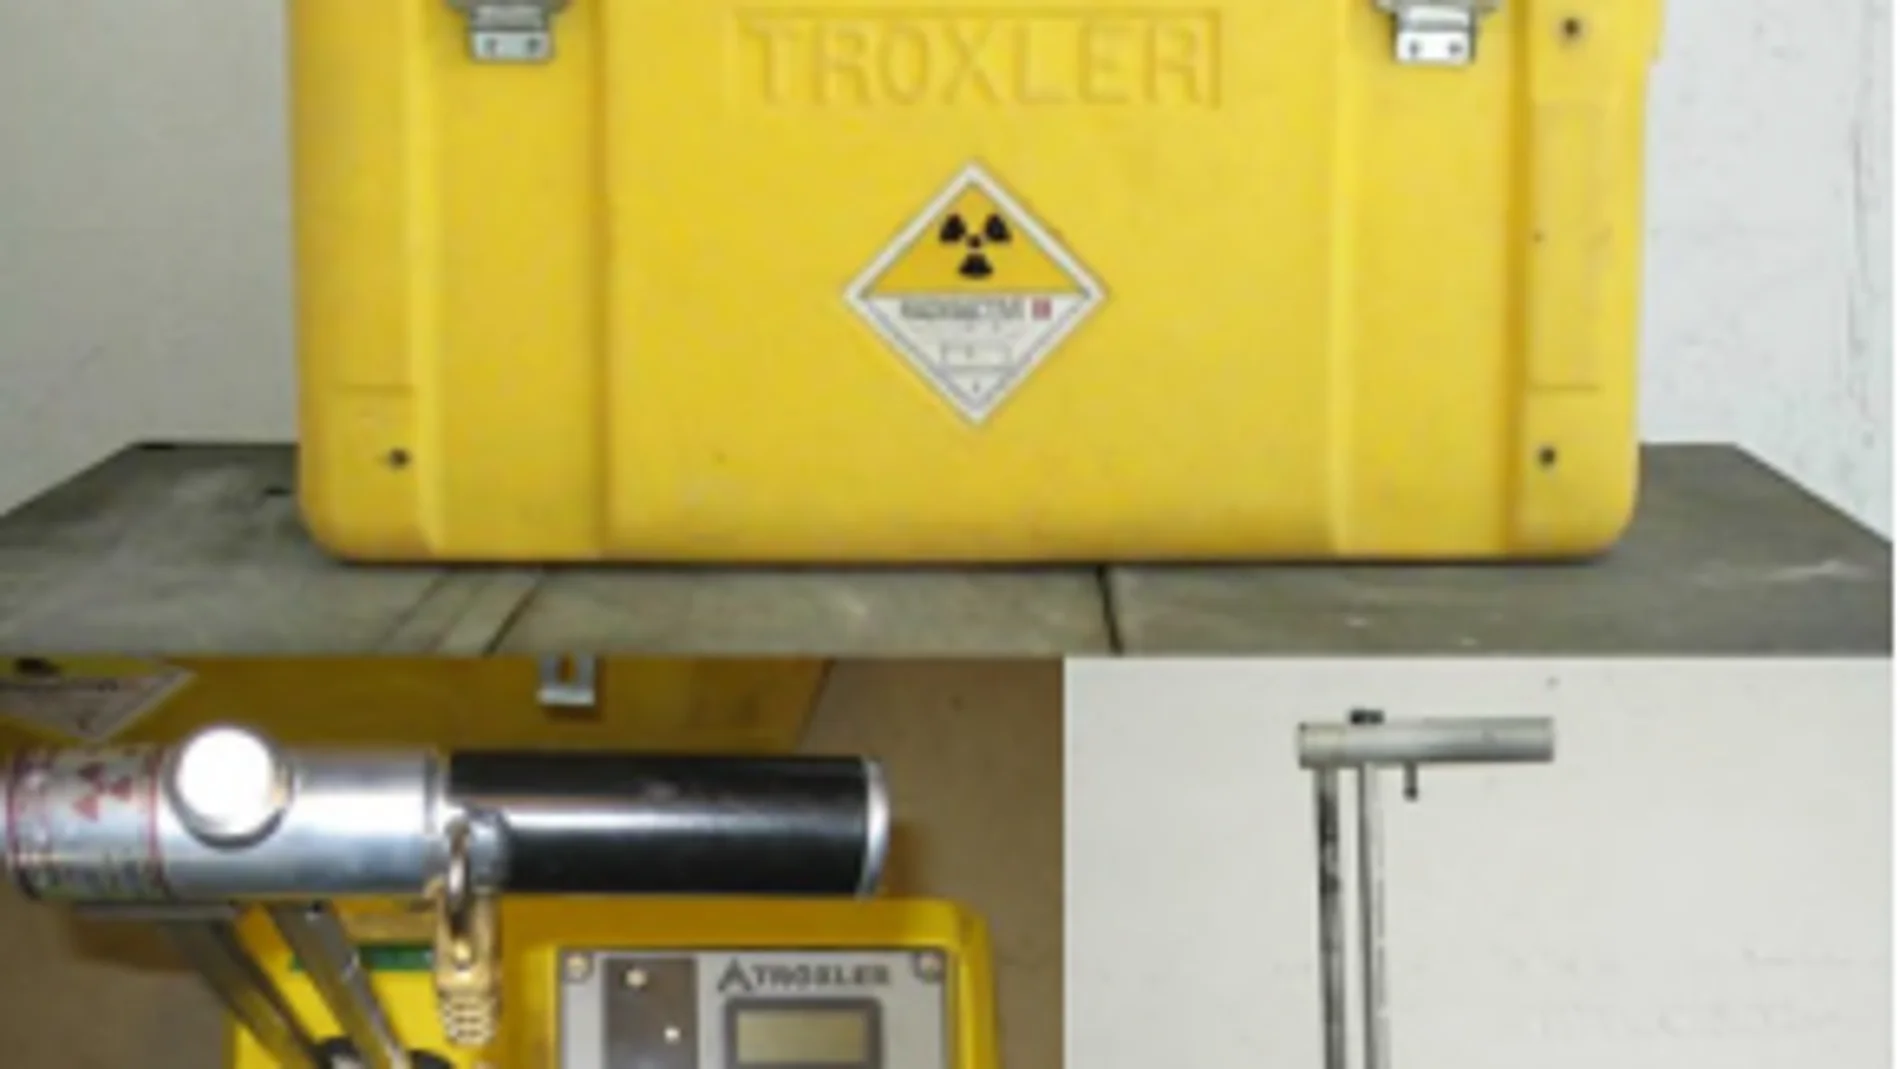 Cómo es el dispositivo radiactivo desaparecido en Madrid y por qué es tan peligroso